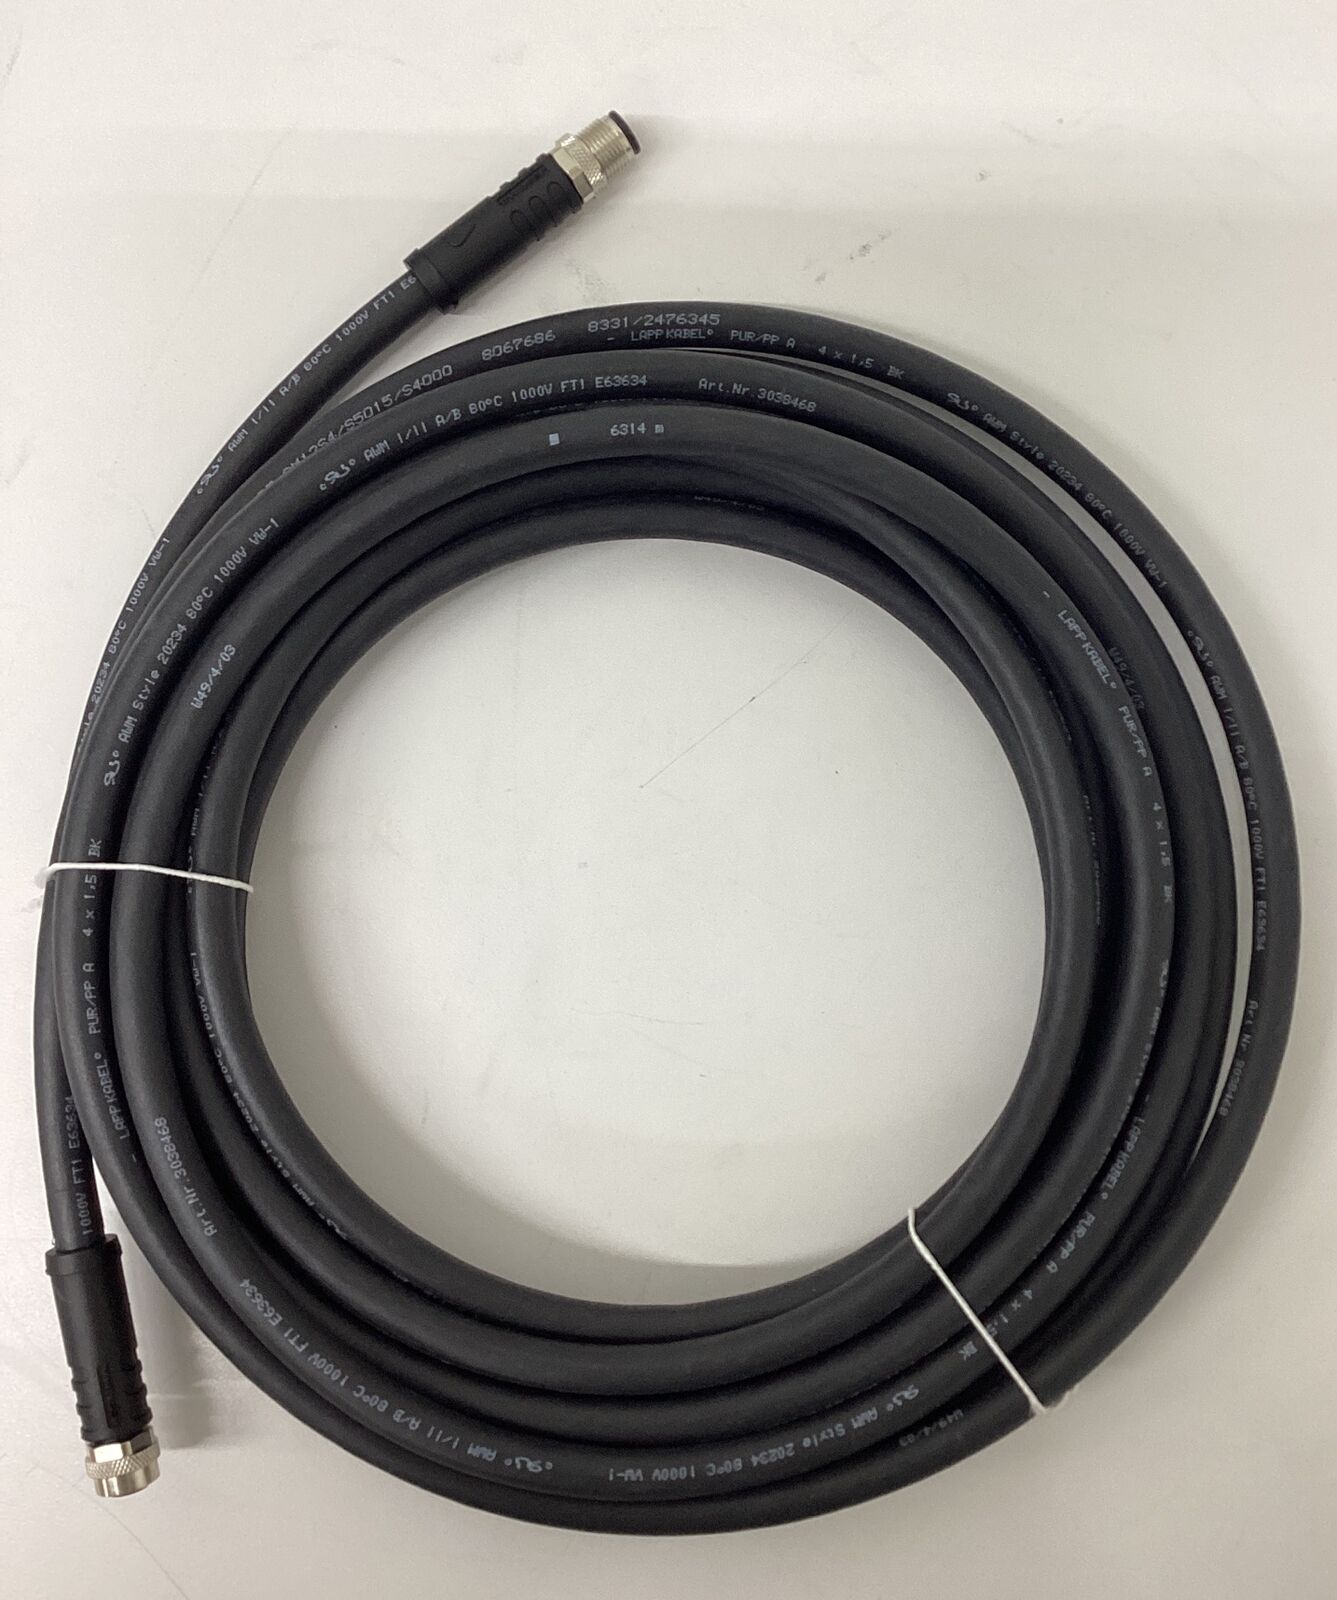 Schmersal 103013434 7.5 Meter  4-Pole Cable V-SK4P-M12P-S-G-7,5M-BK-2-X-T-4 C160